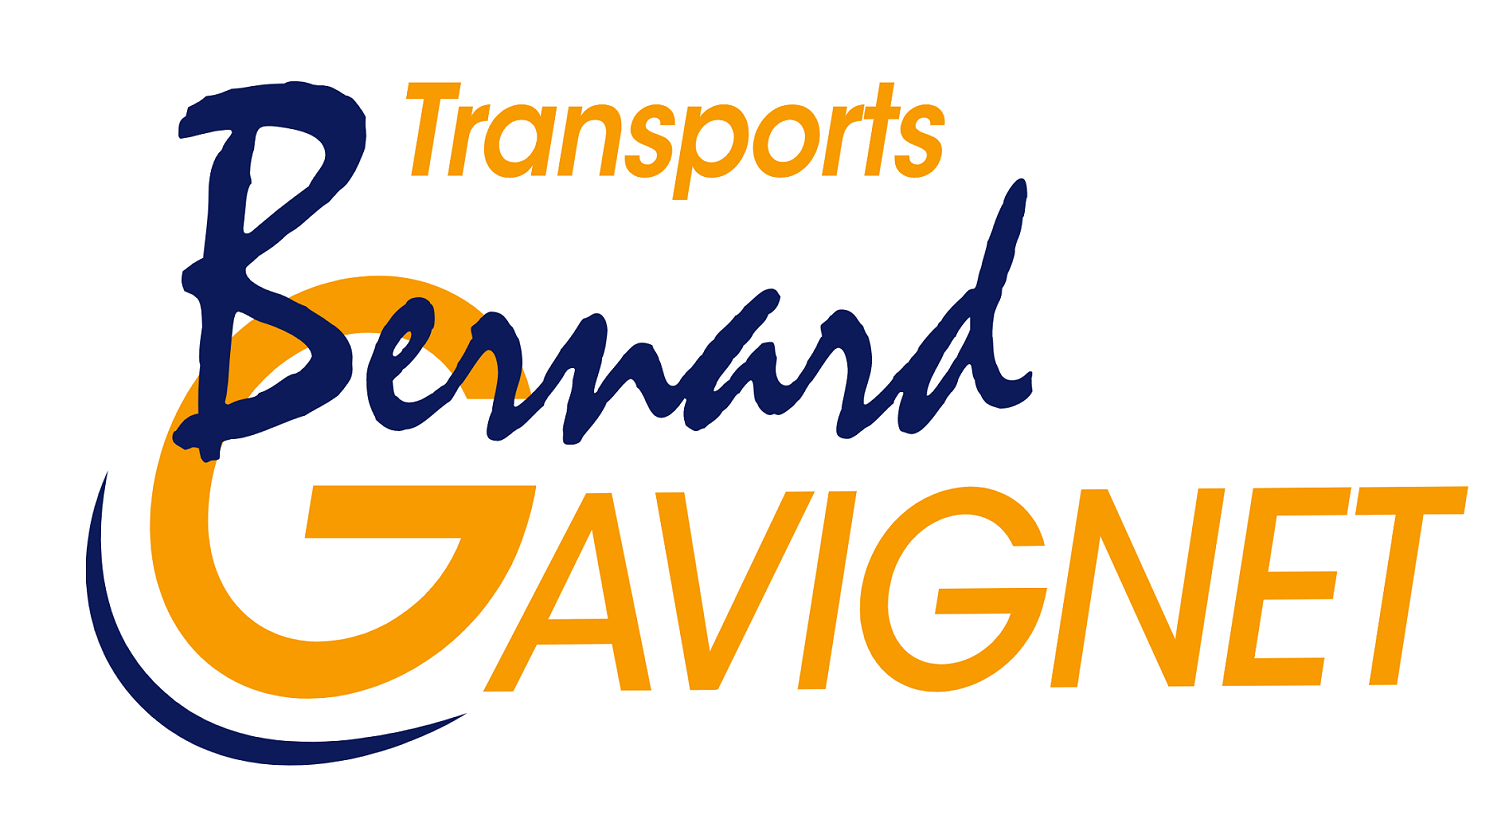 Transports Bernard Gavignet